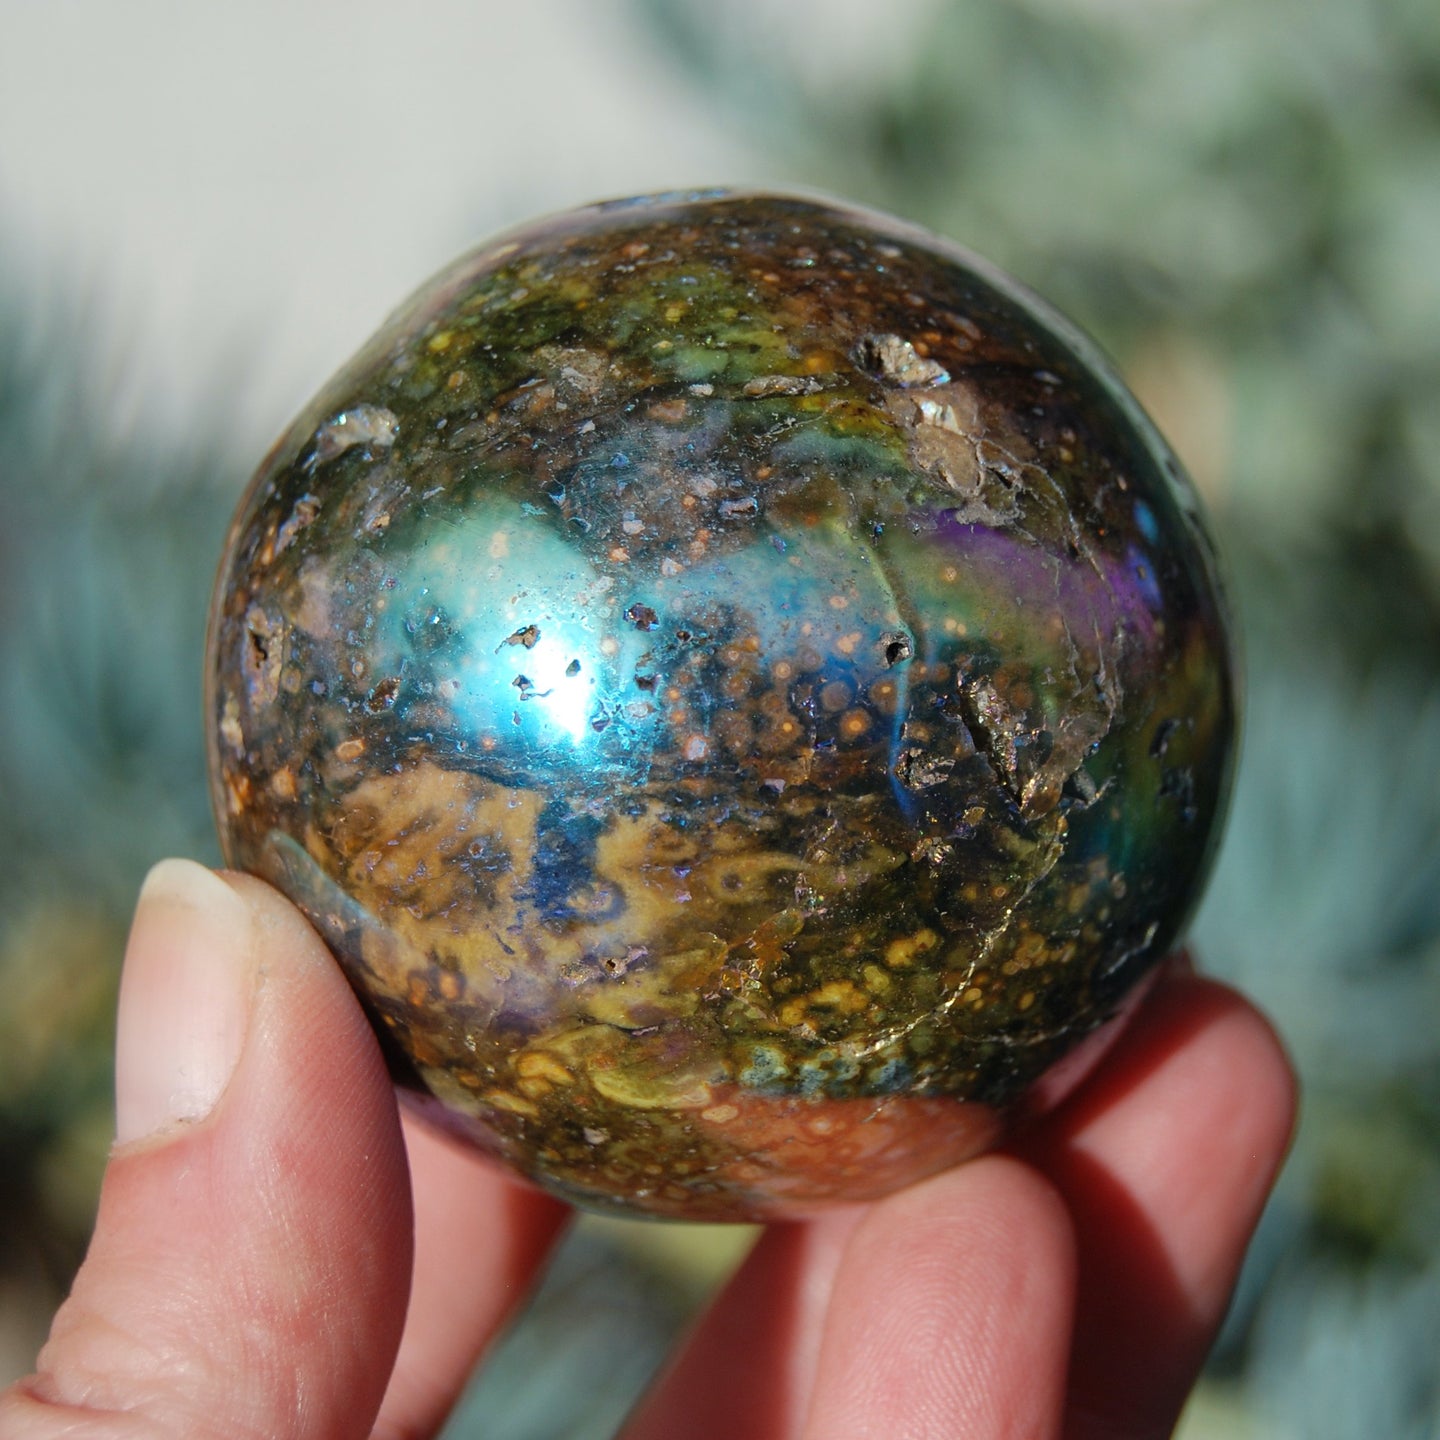 Angel Aura Ocean Jasper Geode Crystal Sphere